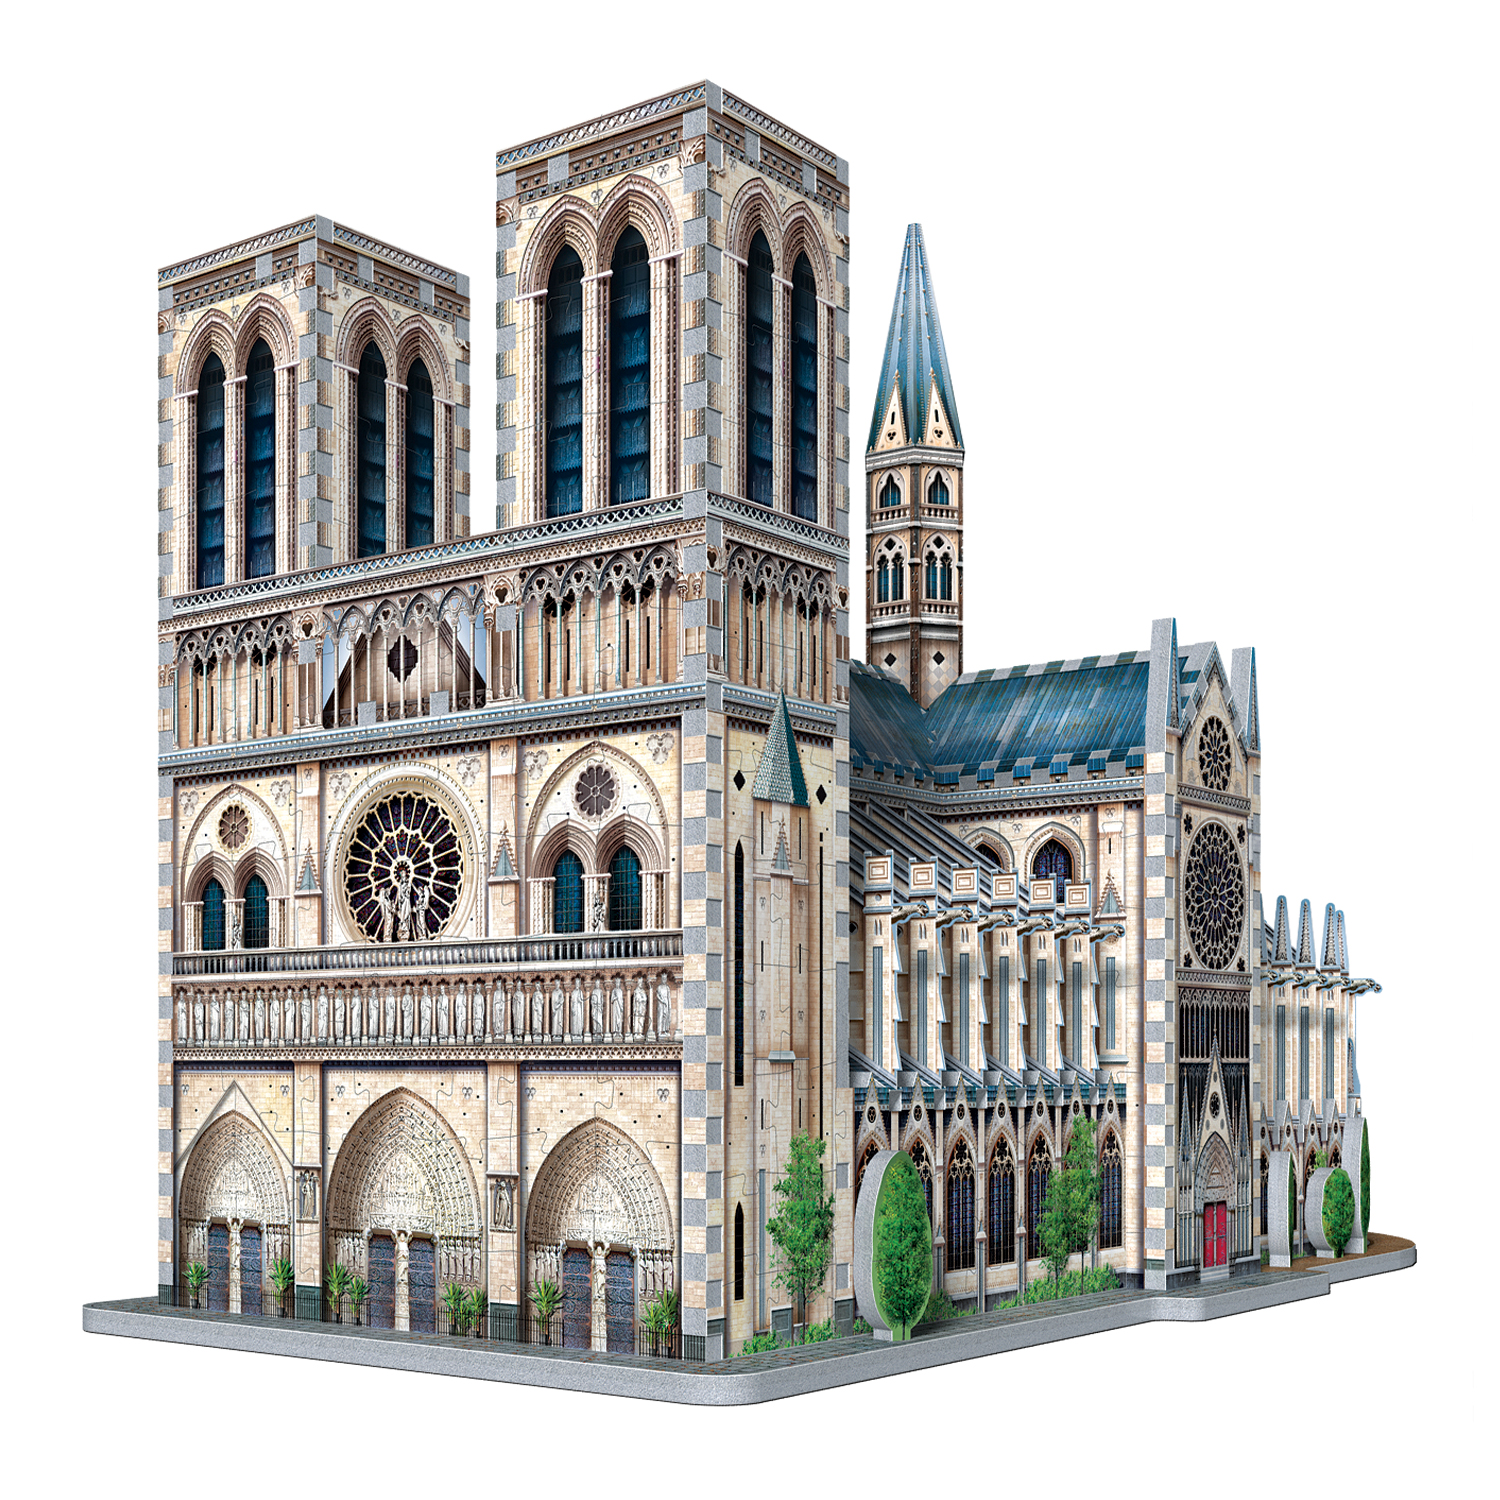 Puzz 3D Puzz 3D Notre Dame Building 952 Piece 3-D Build Jigsaw Puzzle Complete 